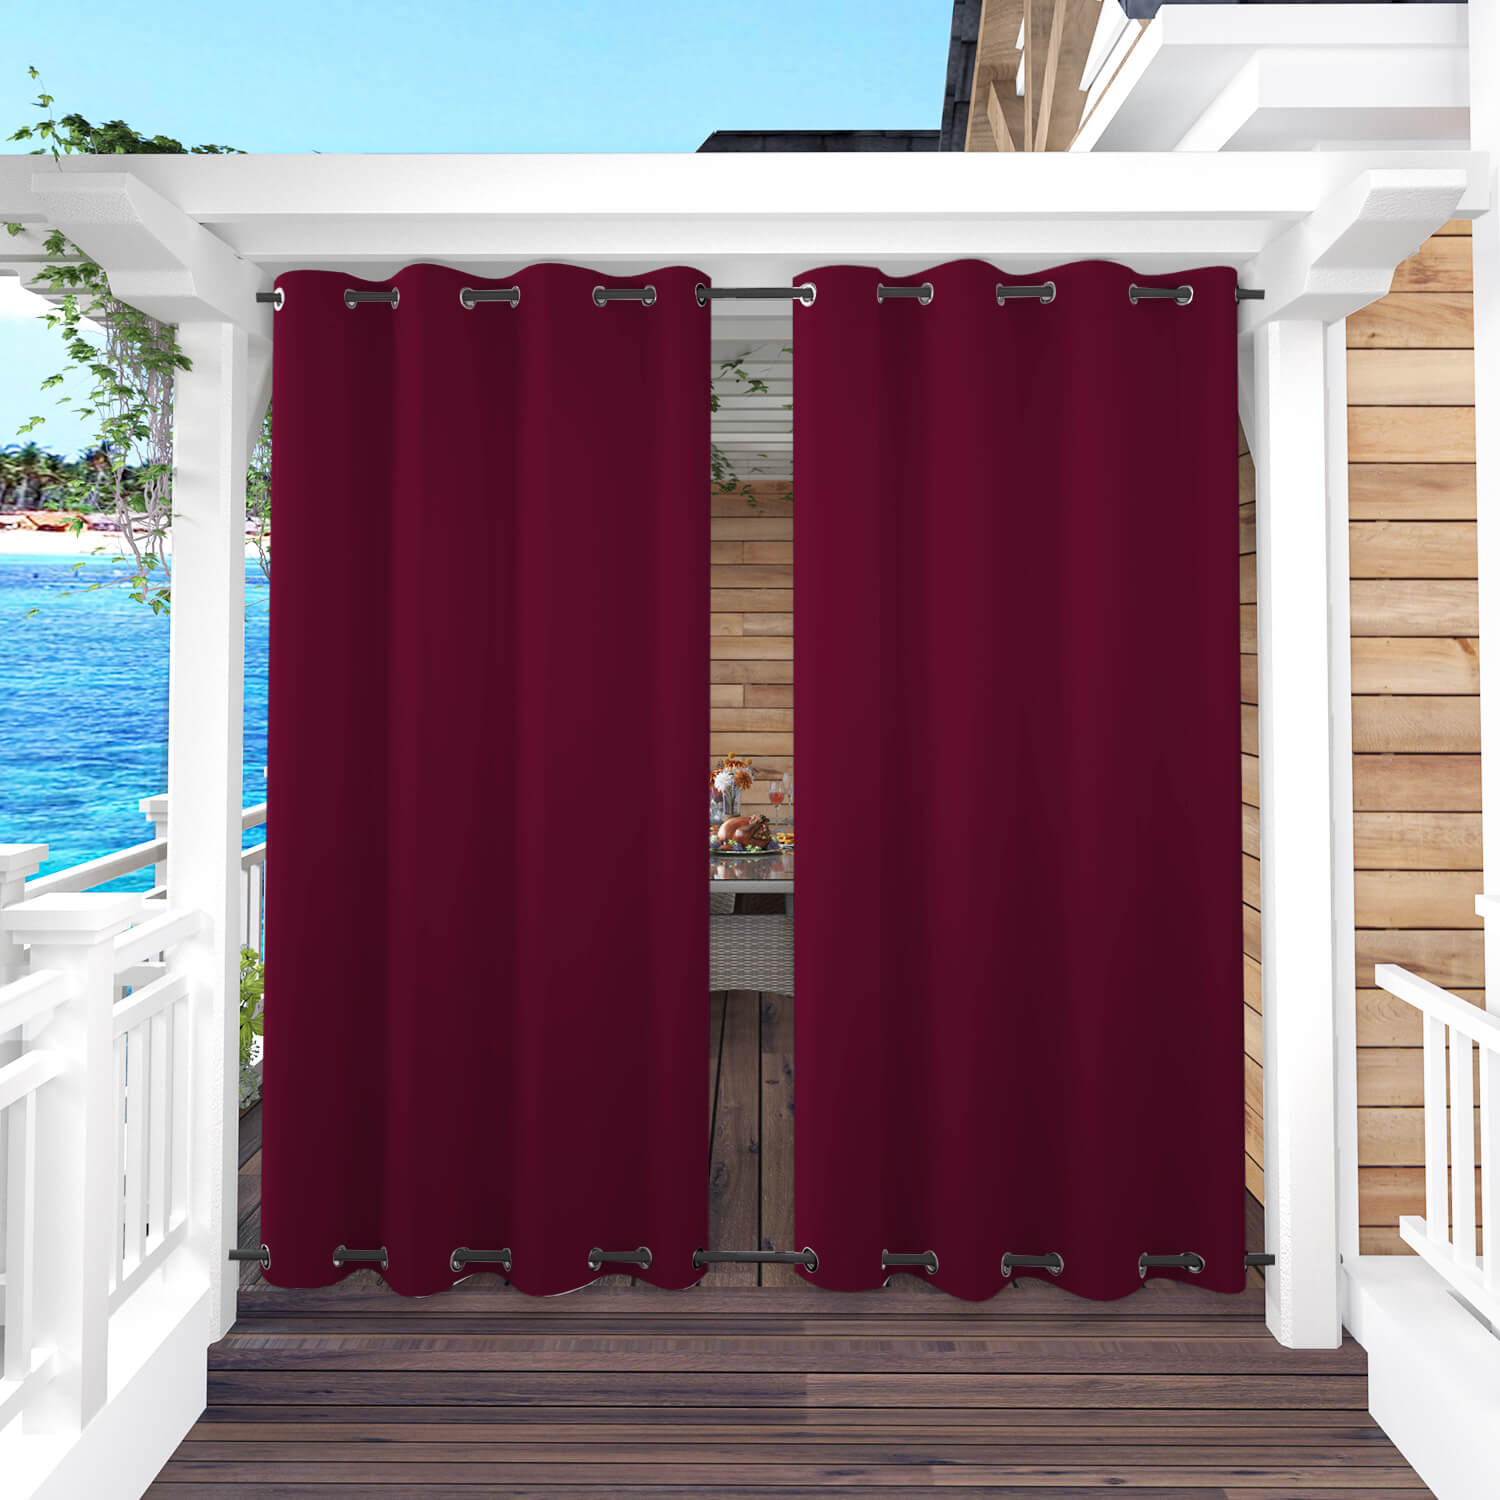 Snowcity Outdoor Curtains Waterproof Grommet Top & Bottom 1 Panel - Wine